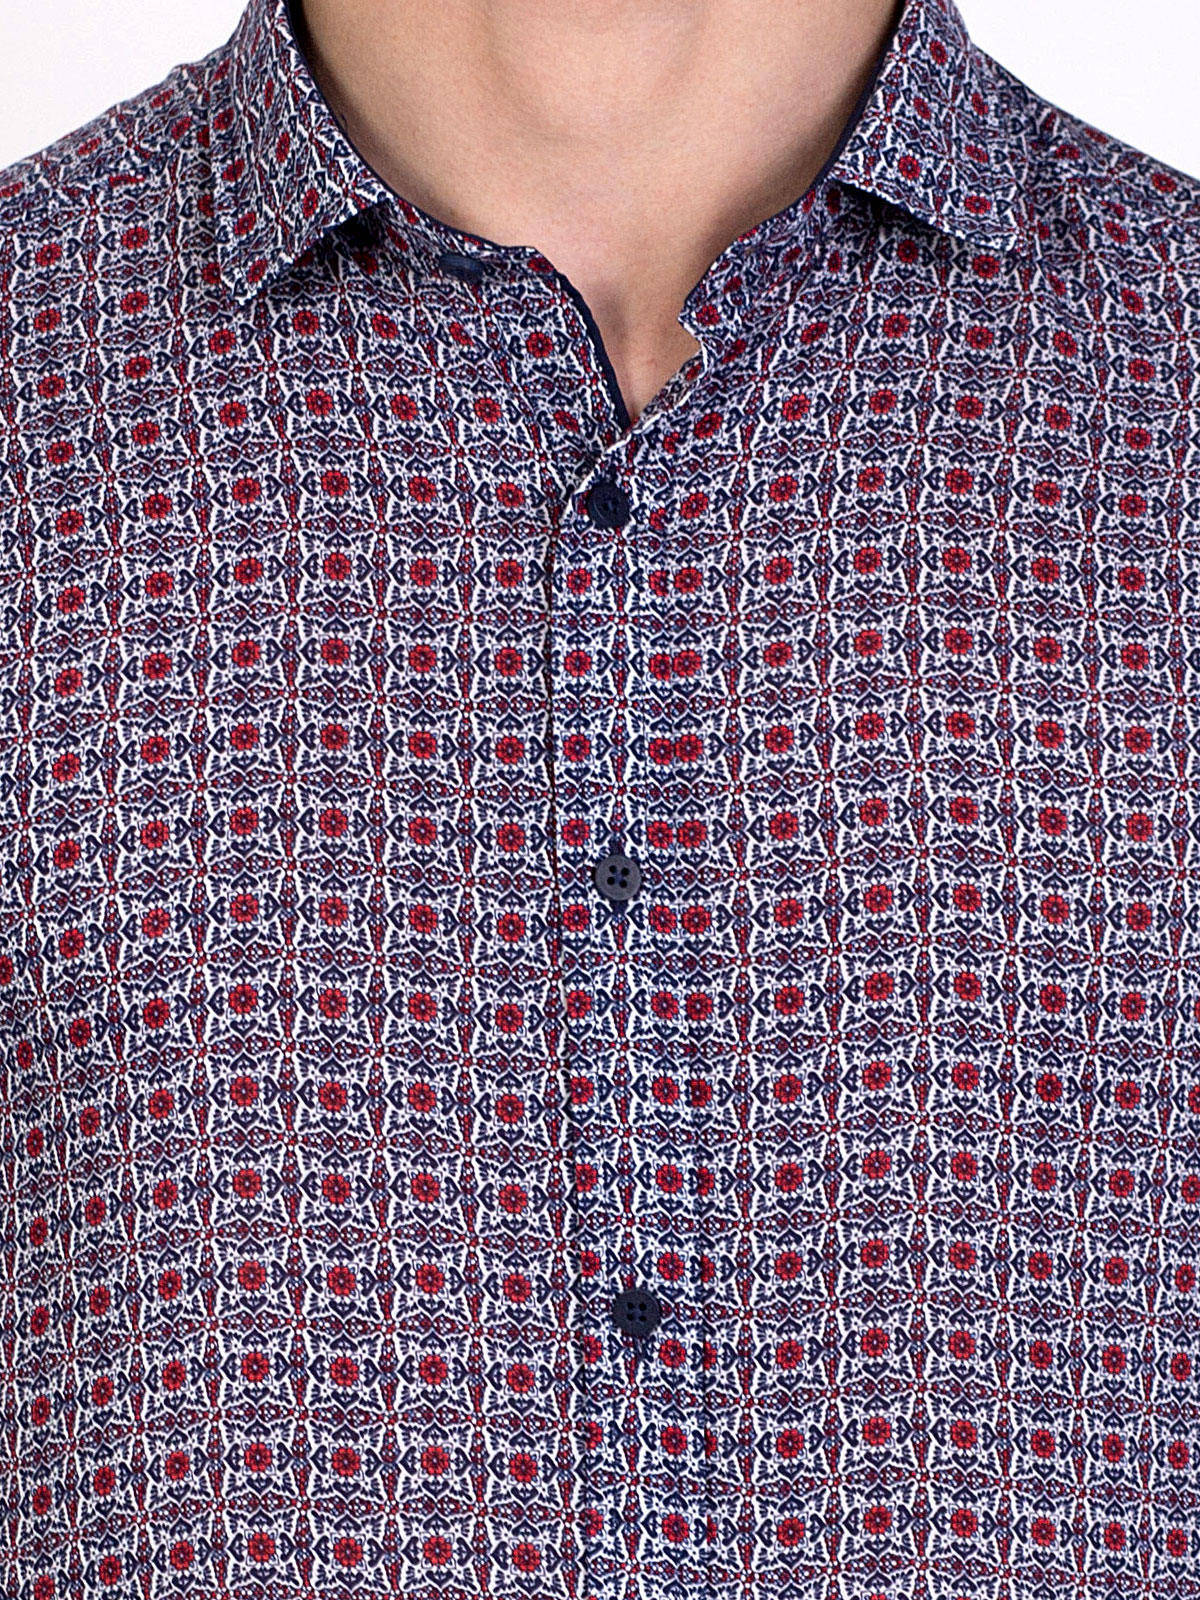 Мъжка копринена риза цветни фигури - 80209 15.00 лв img5